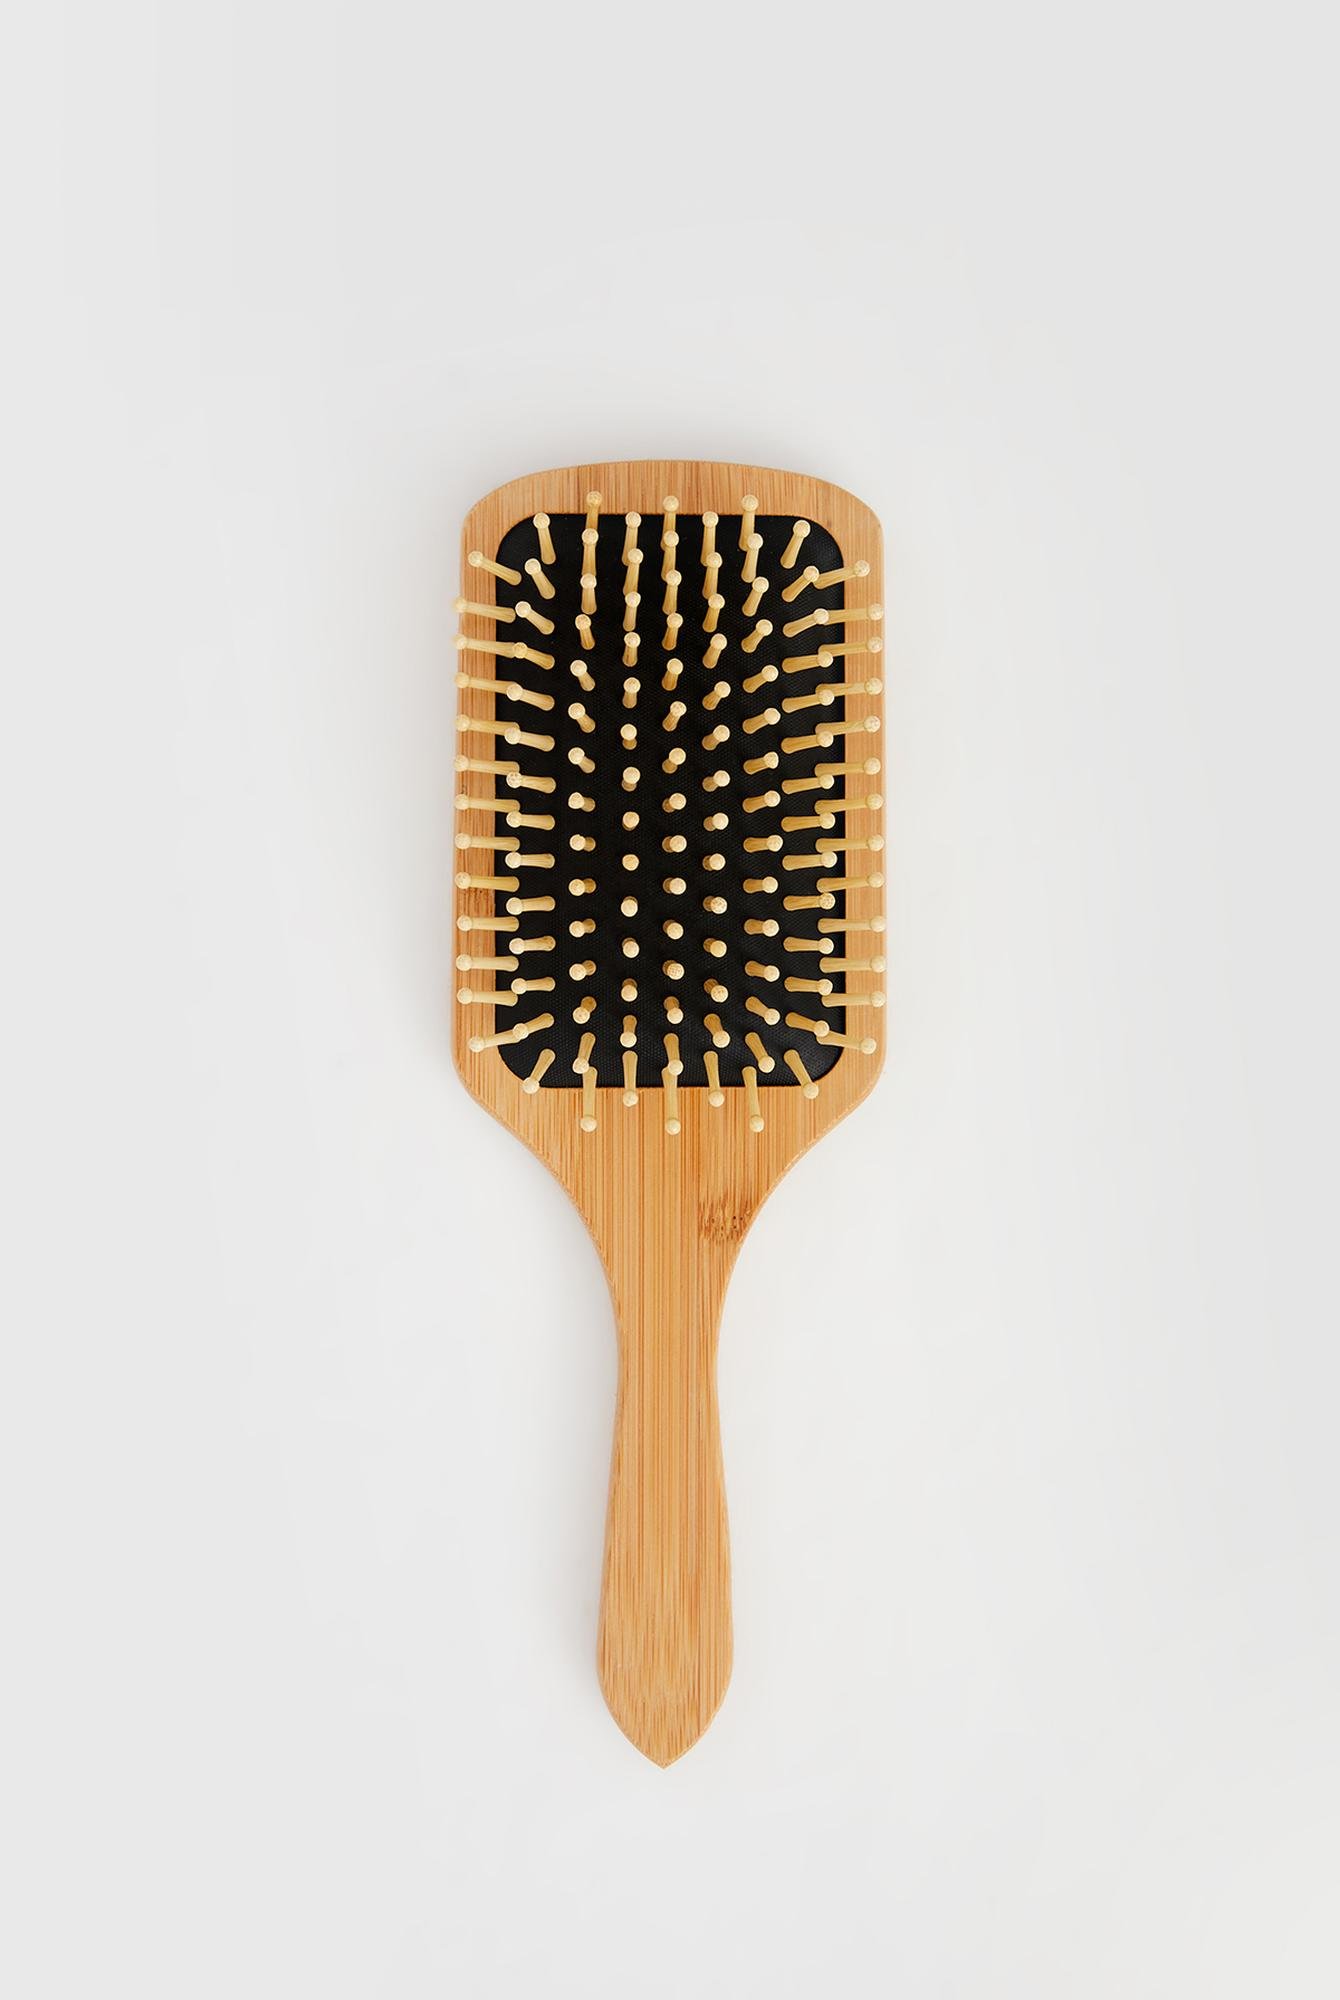  Yoyoso Bambu Saç Fırçası Kare Kalp